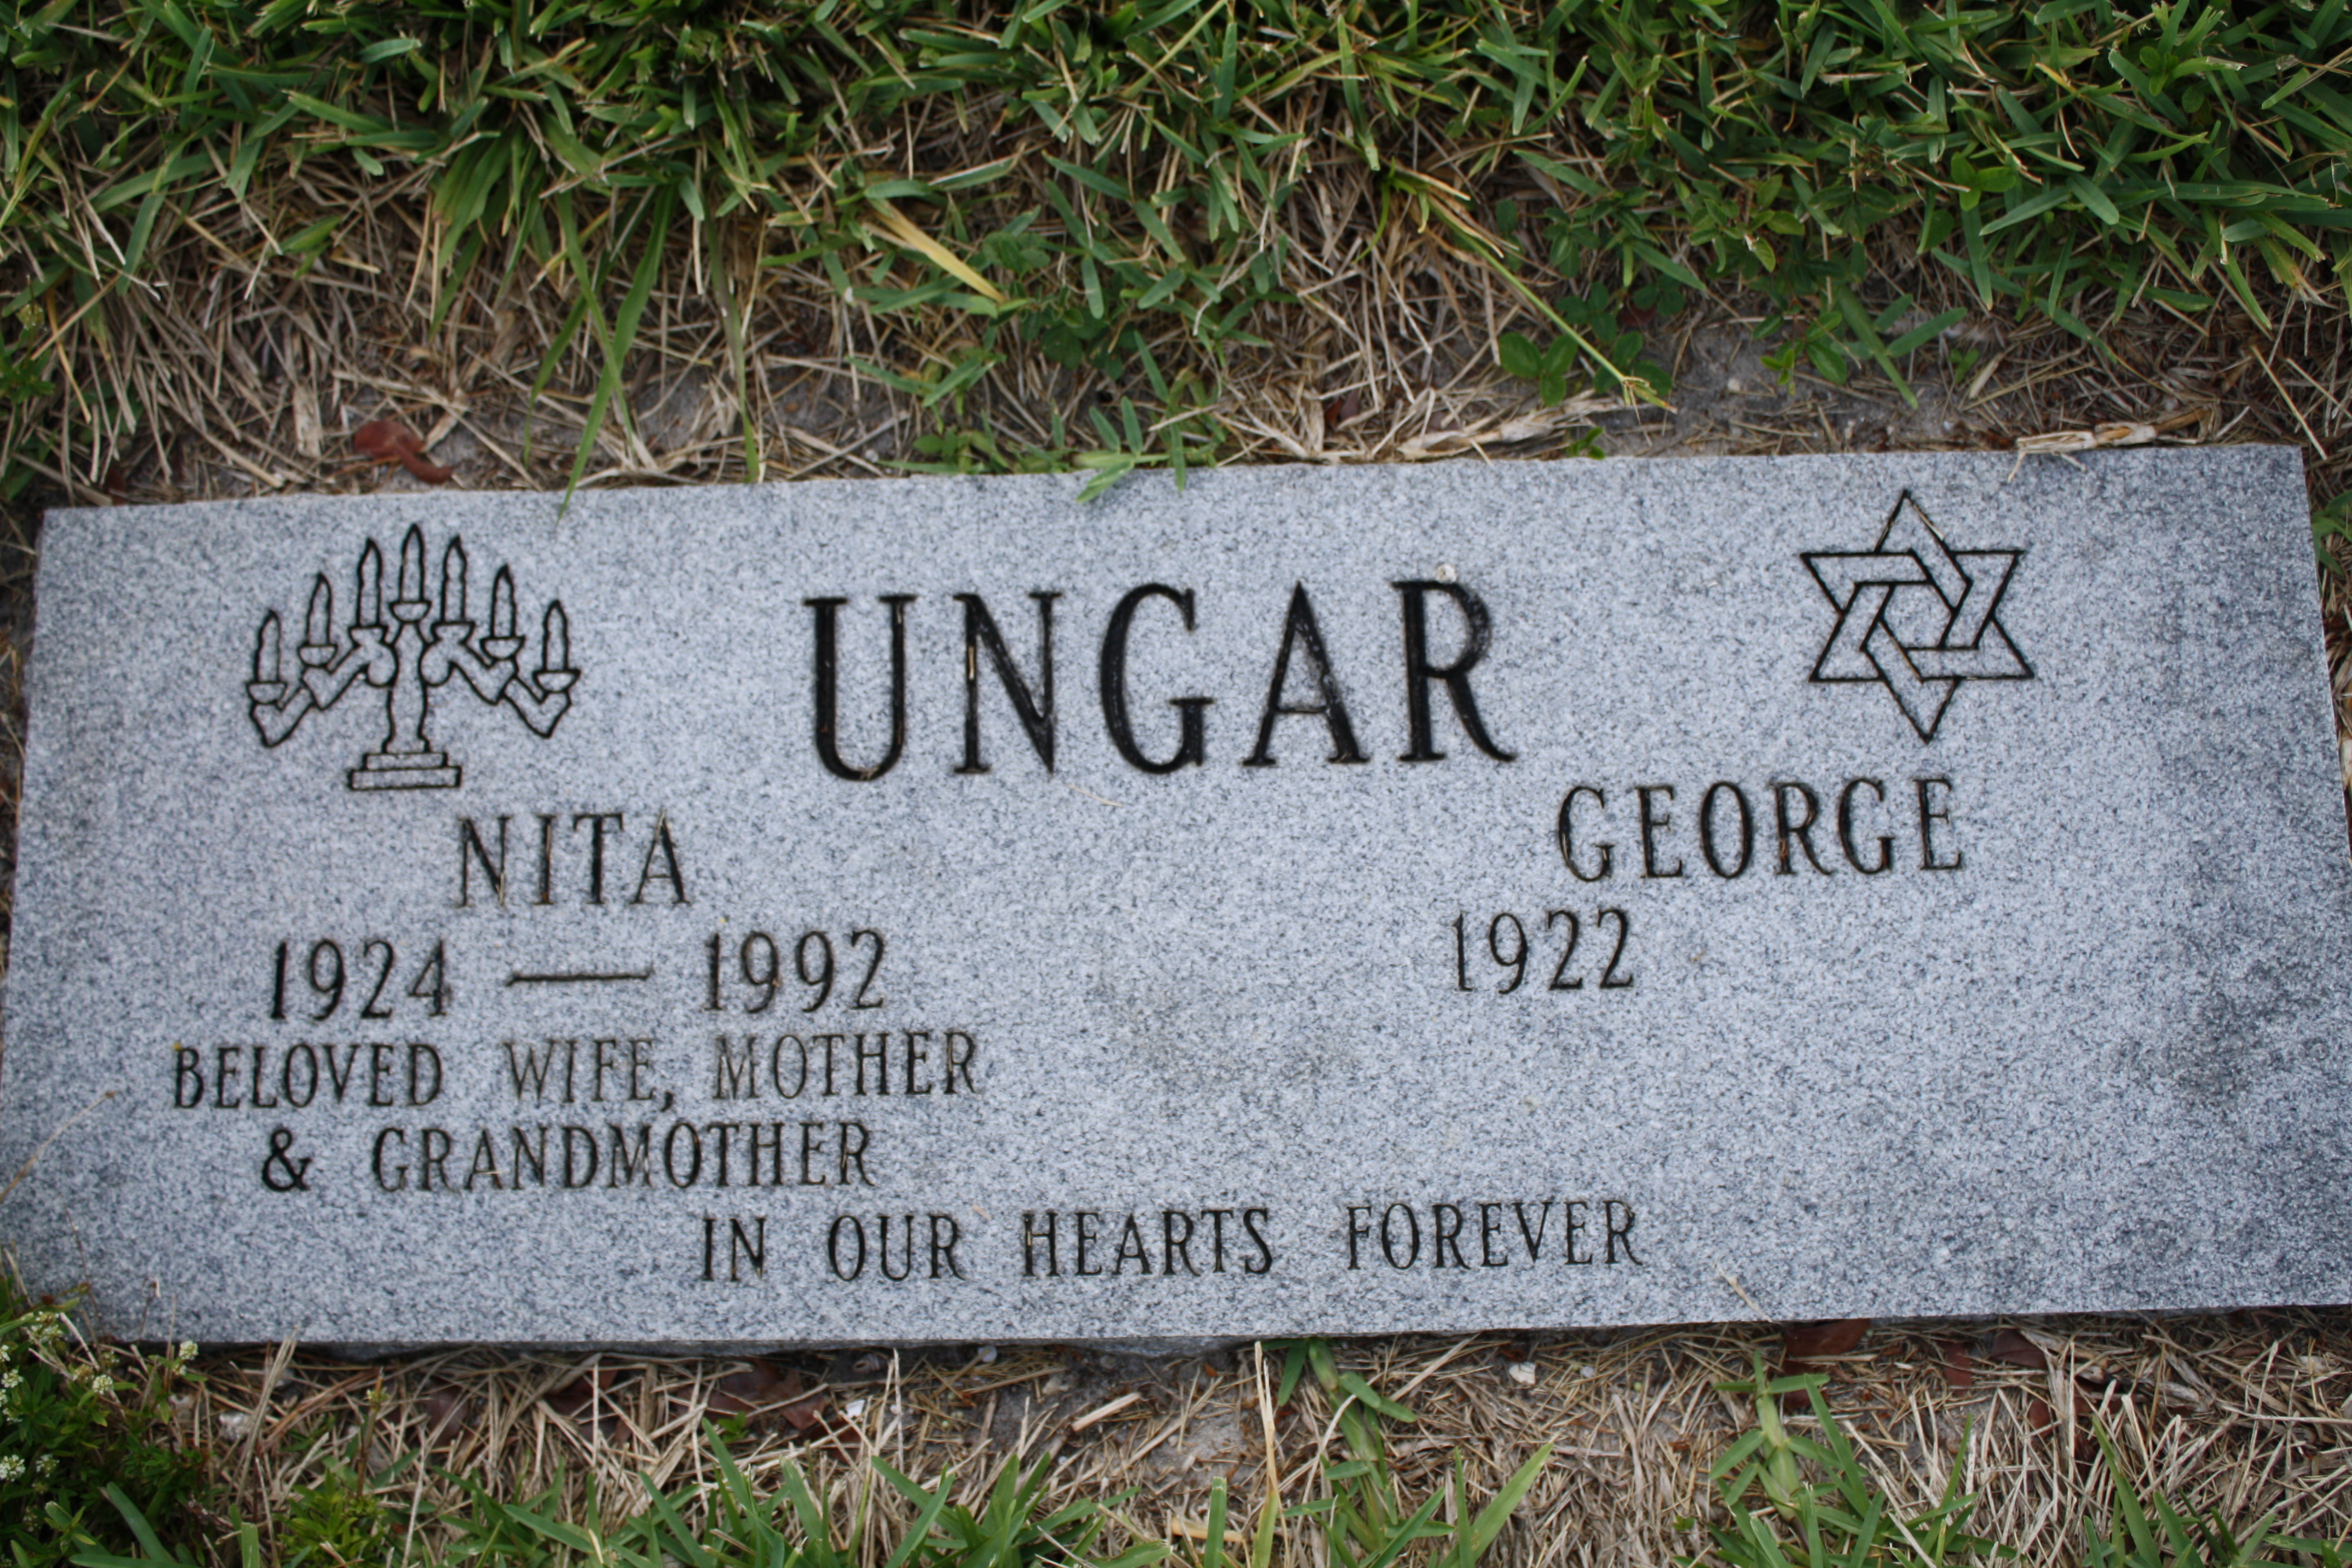 George Ungar